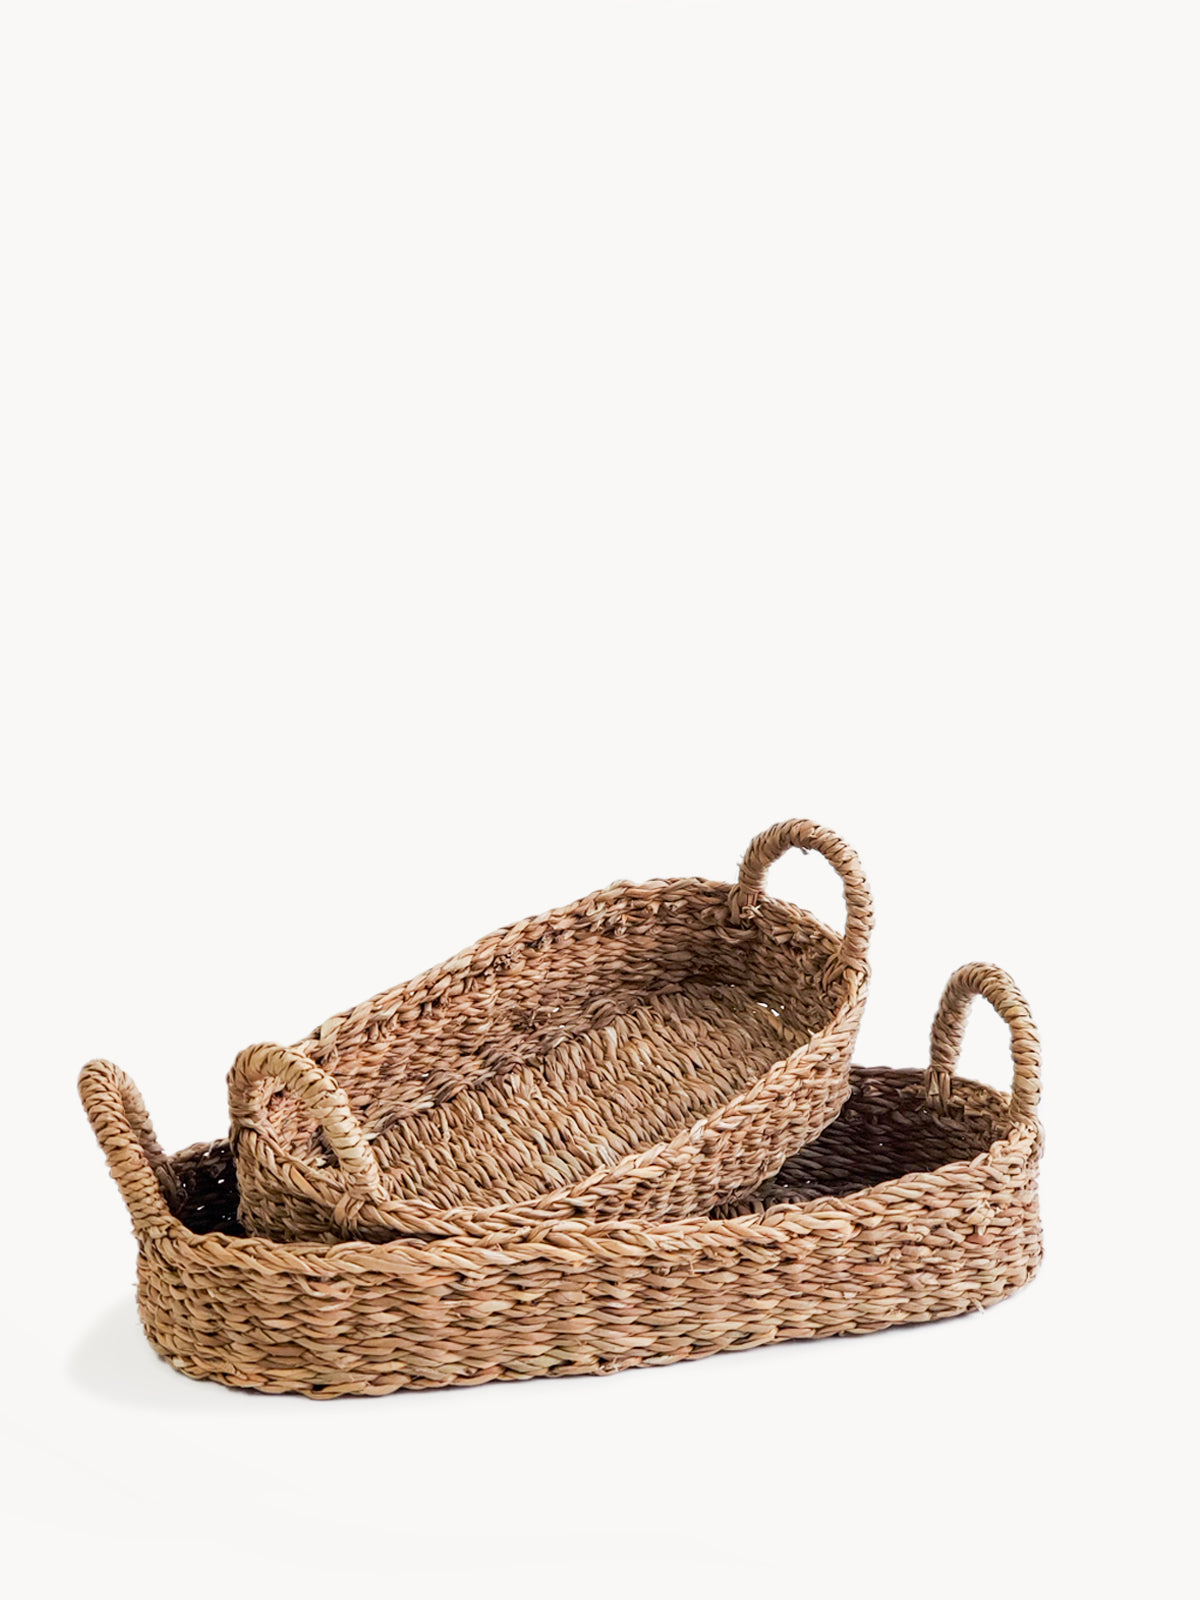 KORISSA, Bread Warmer & Basket - Owl Round